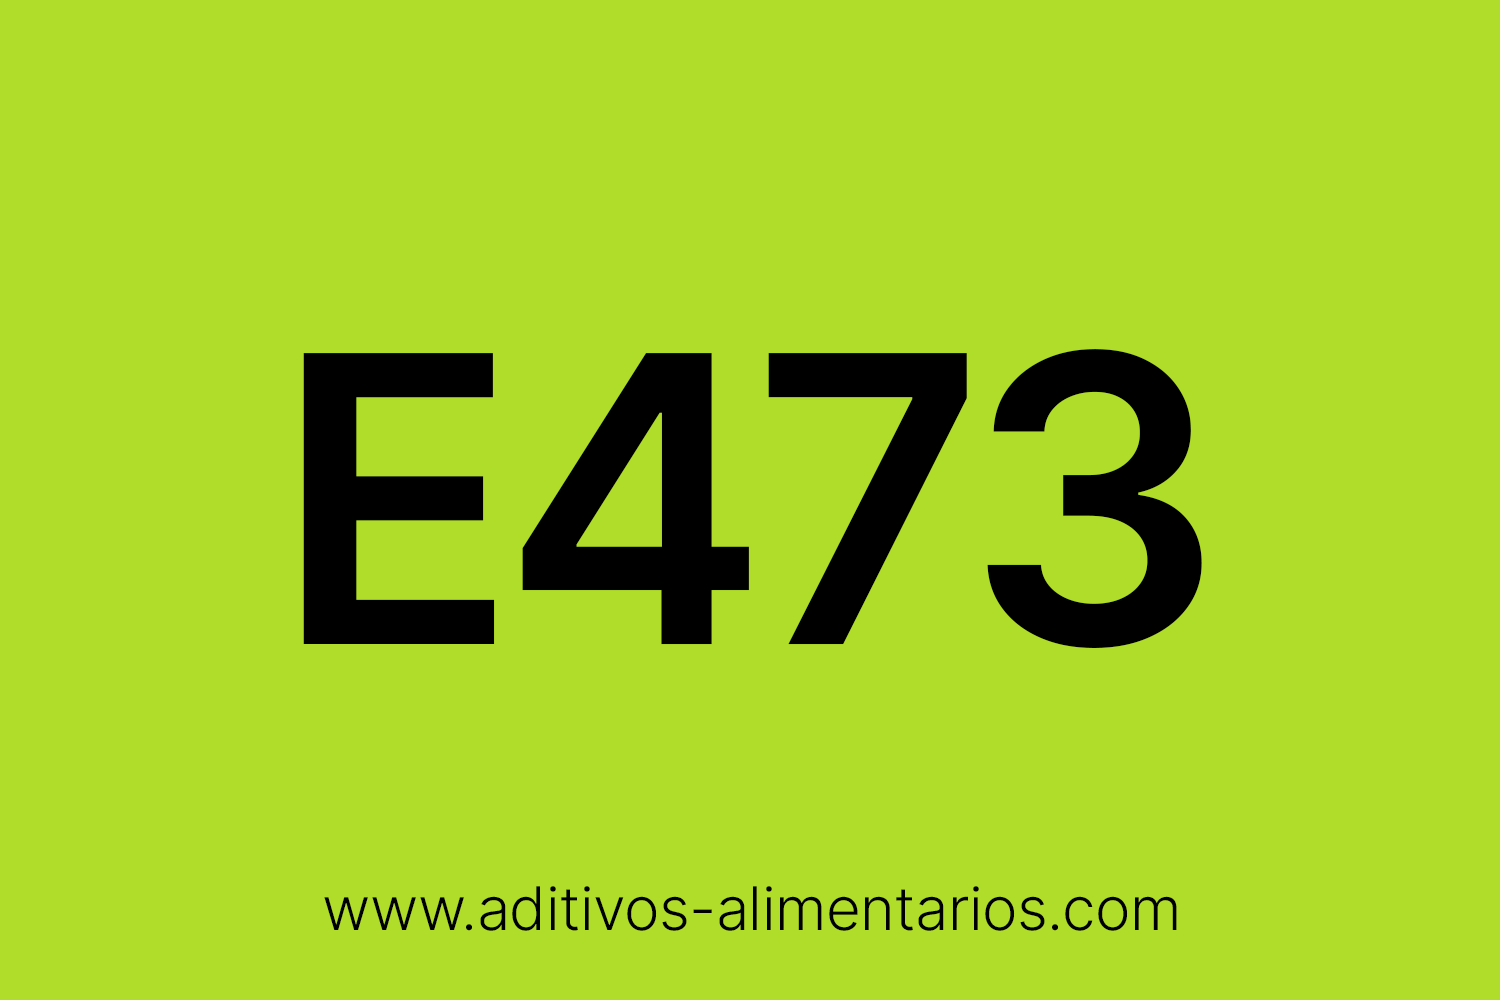 Aditivo Alimentario - E473 - Sucroésteres de Ácidos Grasos